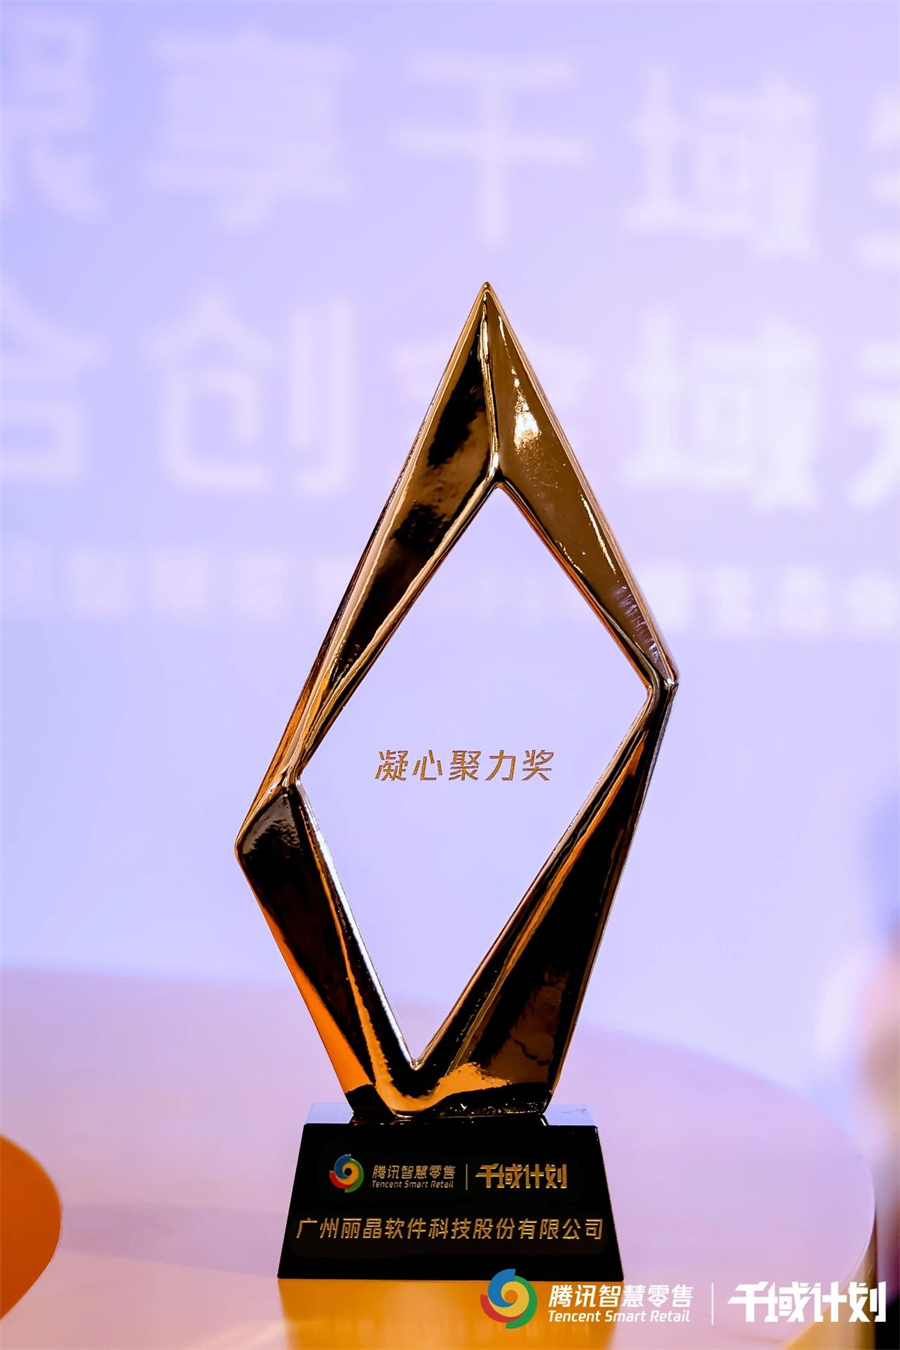 丽晶软件获颁腾讯智慧零售千域计划·凝心聚力奖6.jpg